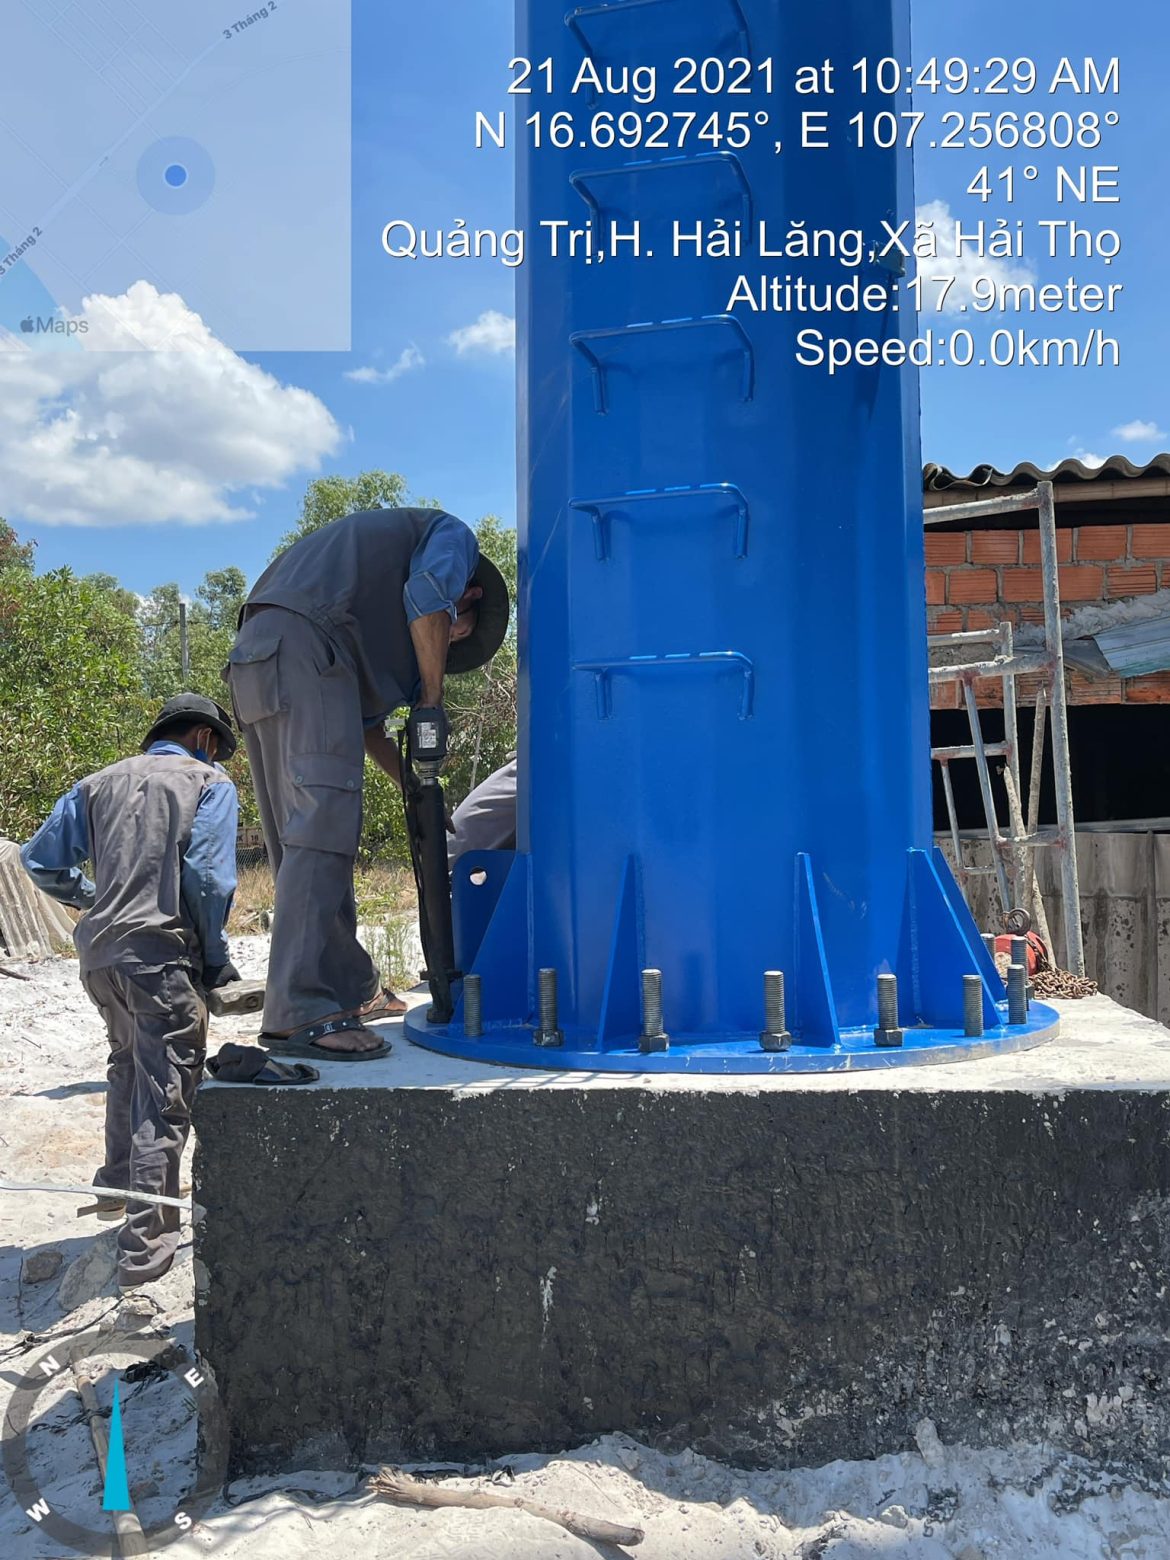 Công ty cổ phần xây dựng viễn thông Việt Nam – Chuyên sản xuất các loại cột Antena xây dựng cơ sở hạ tầng viễn thông